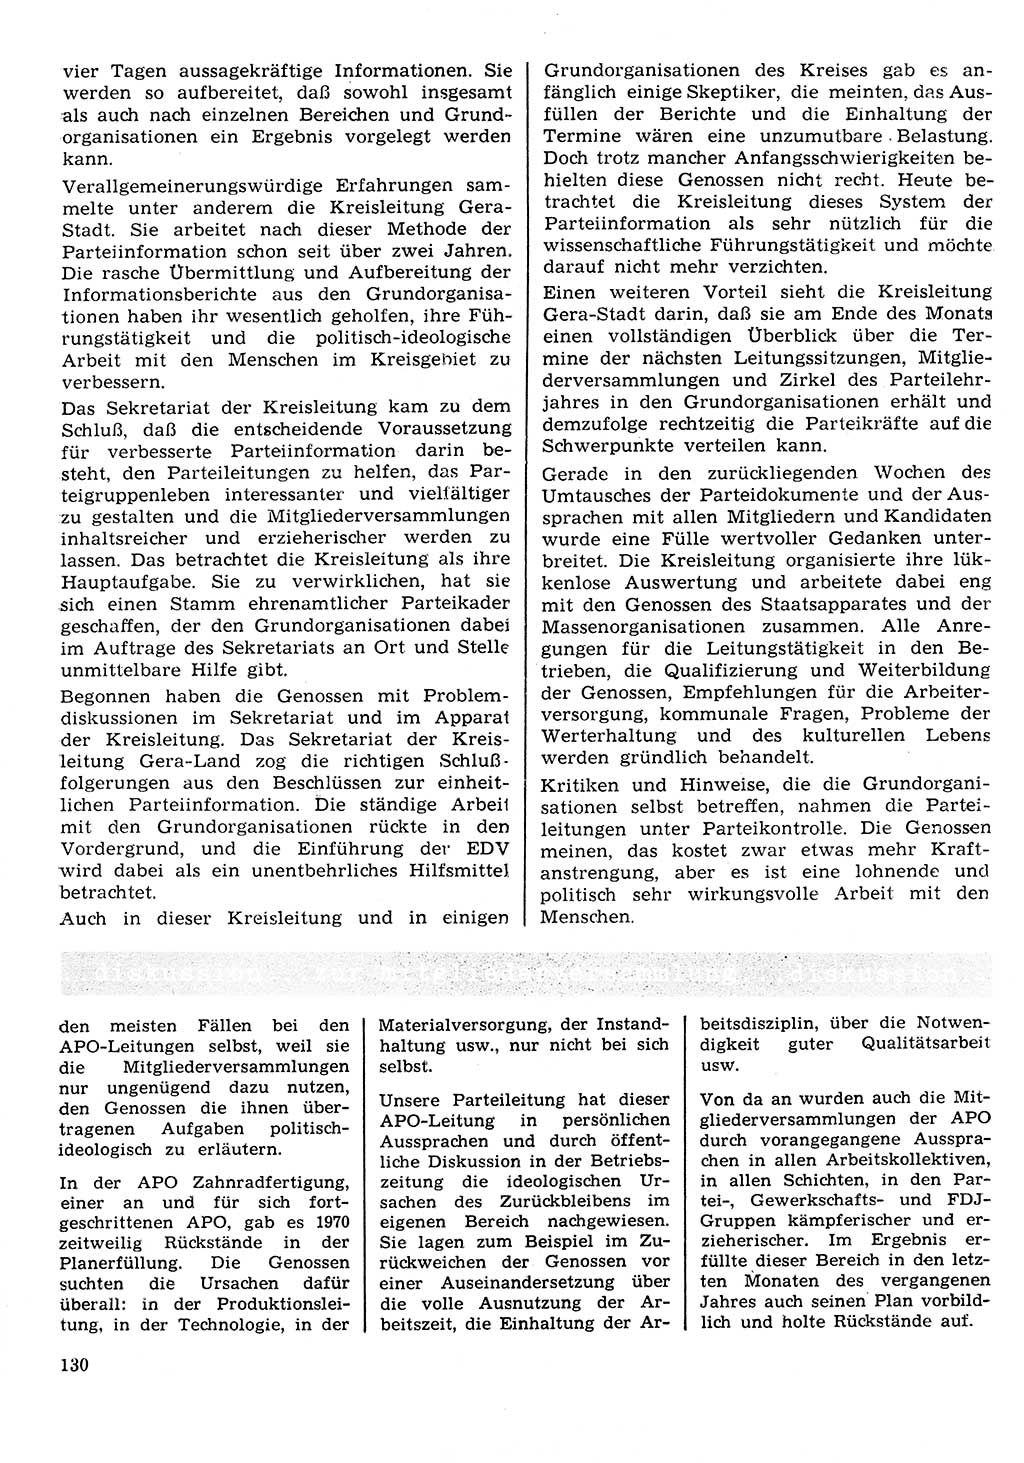 Neuer Weg (NW), Organ des Zentralkomitees (ZK) der SED (Sozialistische Einheitspartei Deutschlands) für Fragen des Parteilebens, 26. Jahrgang [Deutsche Demokratische Republik (DDR)] 1971, Seite 130 (NW ZK SED DDR 1971, S. 130)